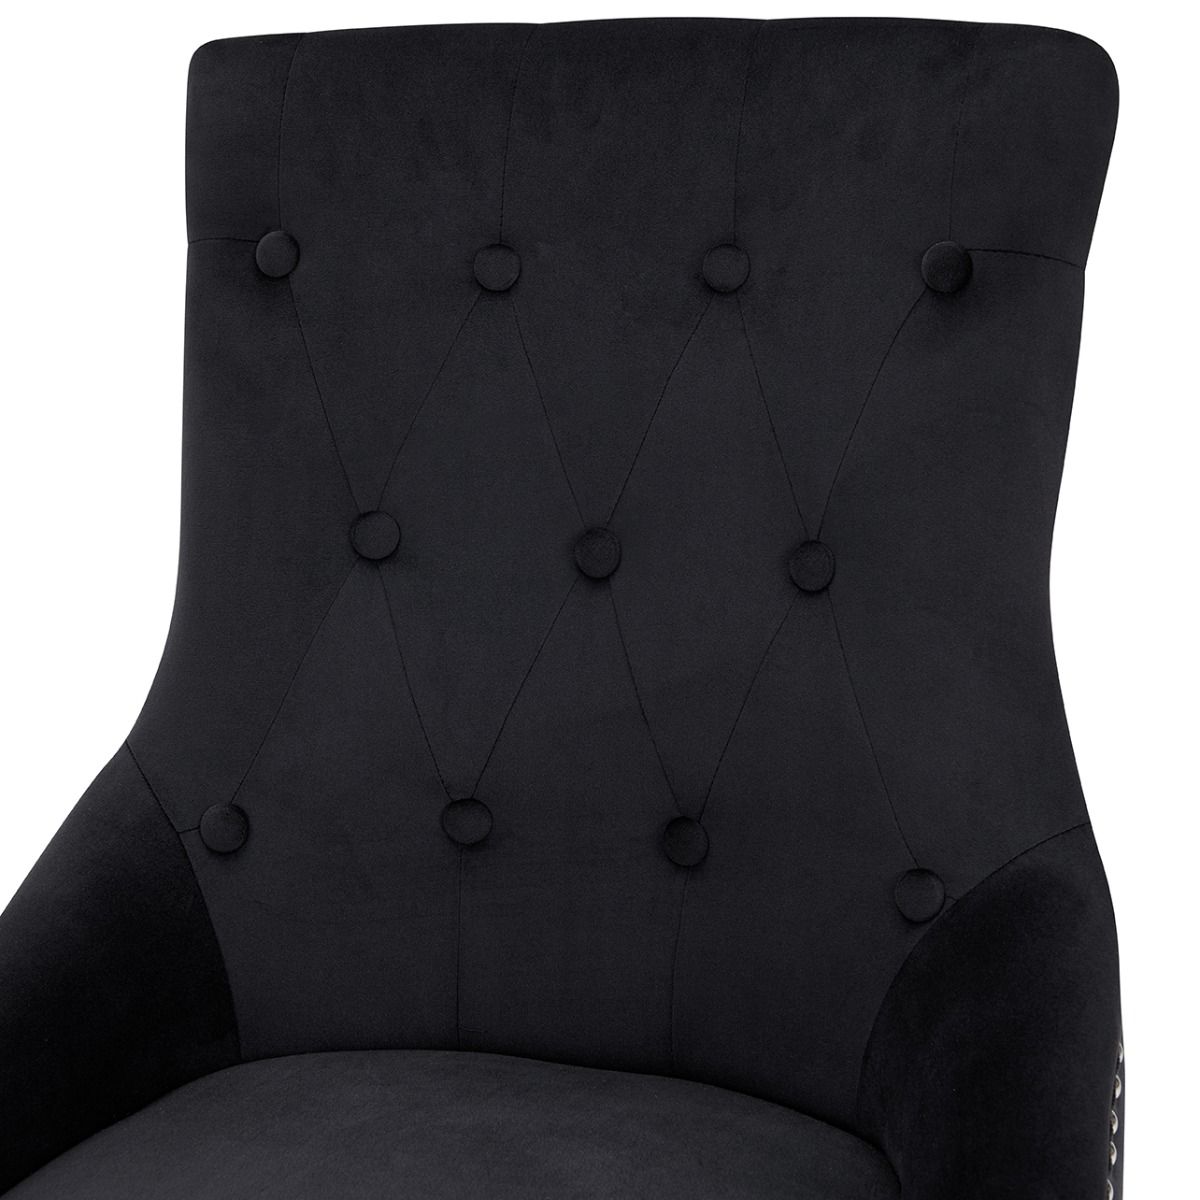 Set of 6 Lion Knocker Dining Chair-Black Velvet